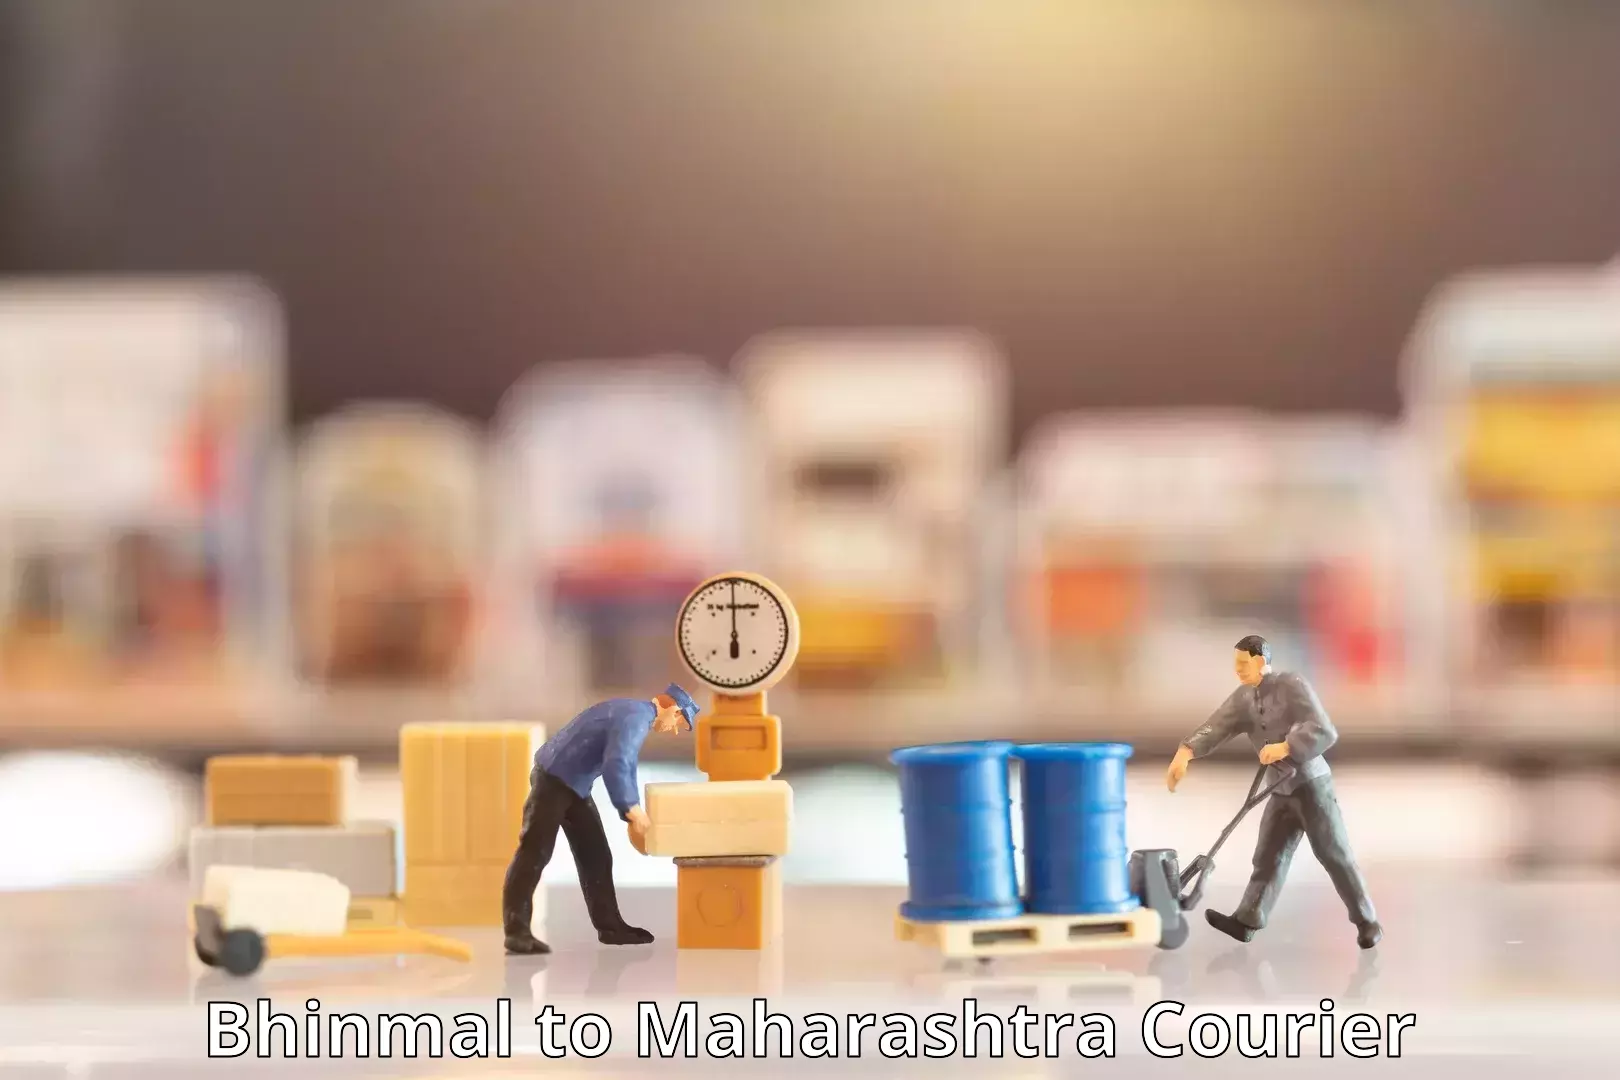 Customer-centric shipping Bhinmal to Maharashtra